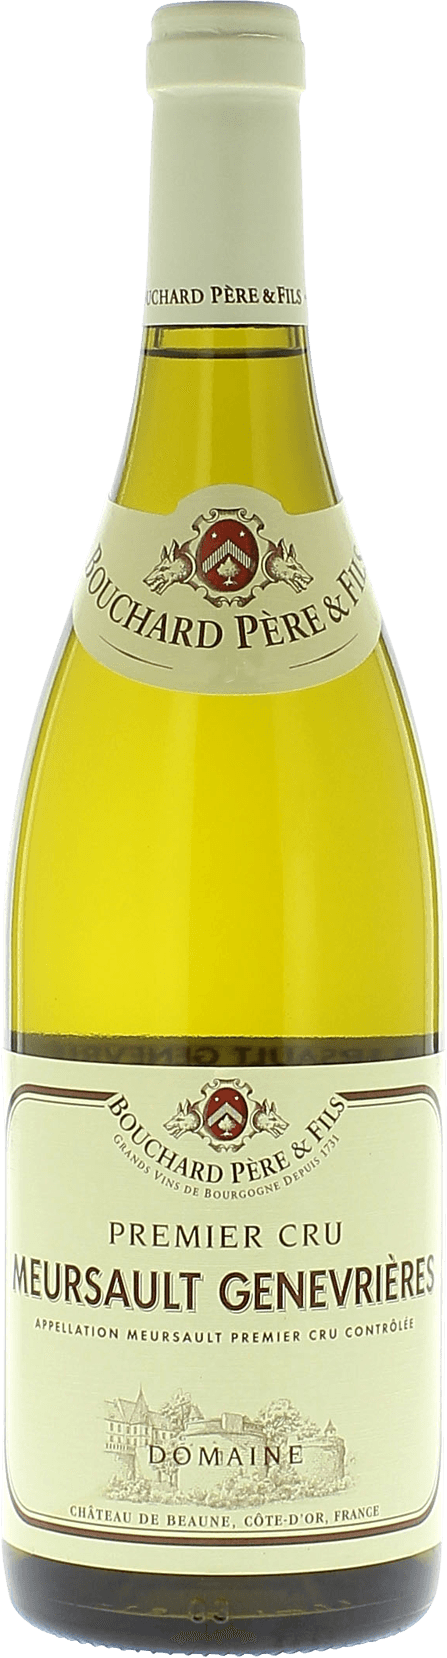 Meursault 1er cru genevrires 2019  BOUCHARD Pre et fils, Bourgogne blanc